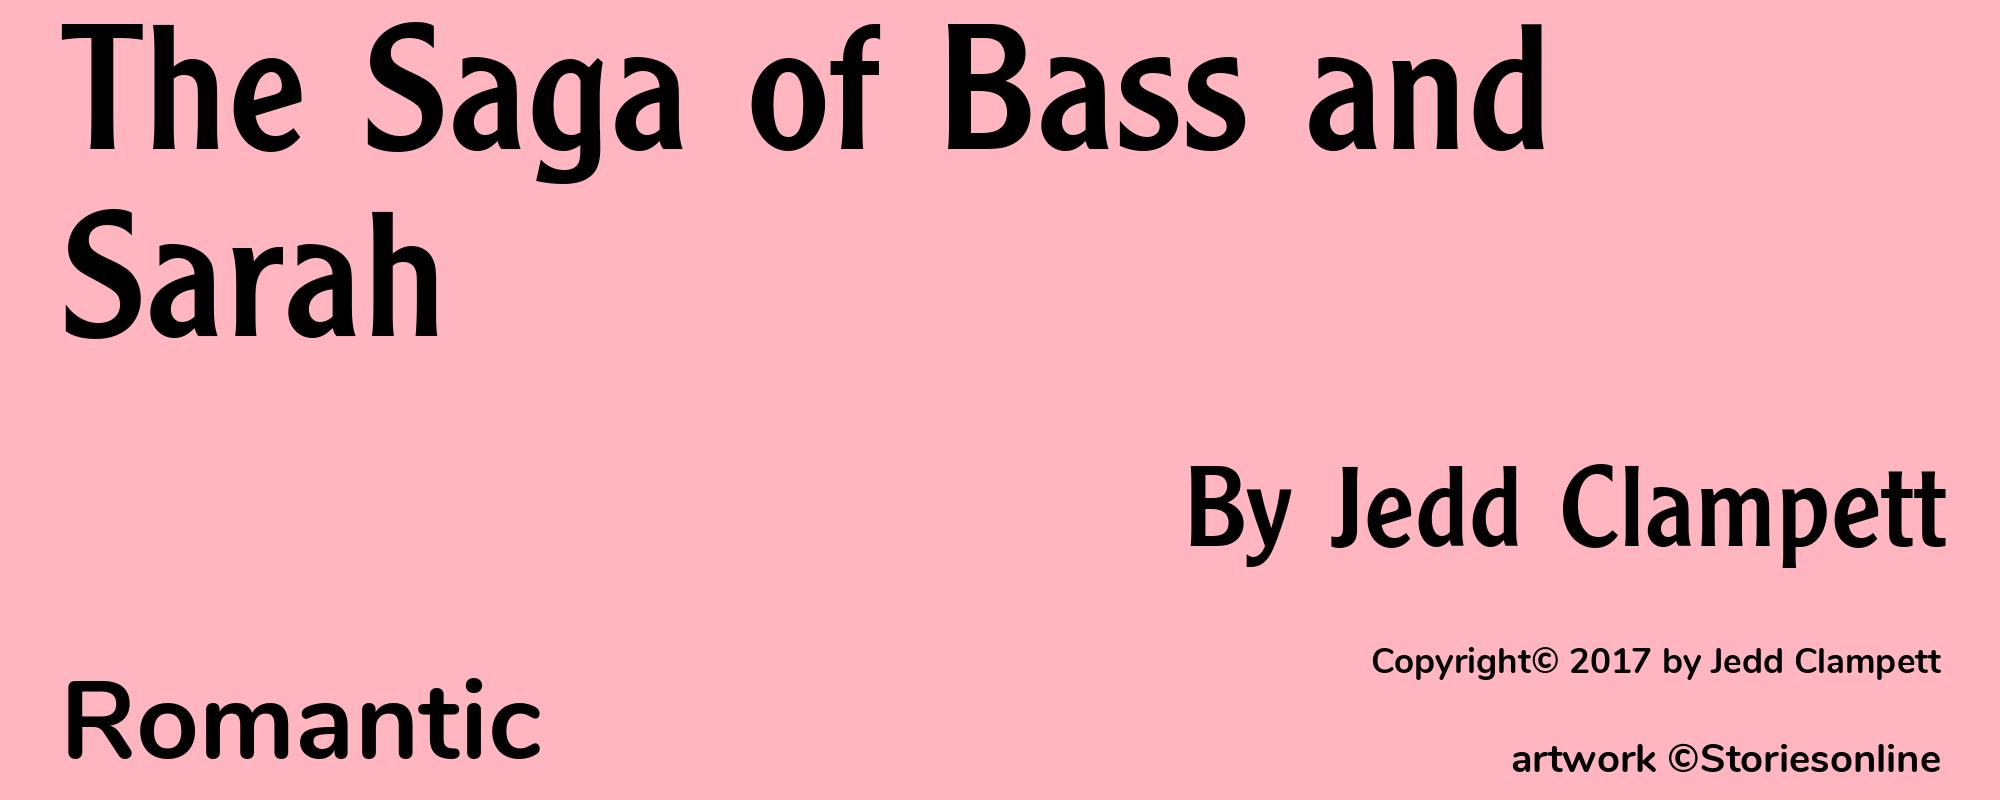 The Saga of Bass and Sarah - Cover